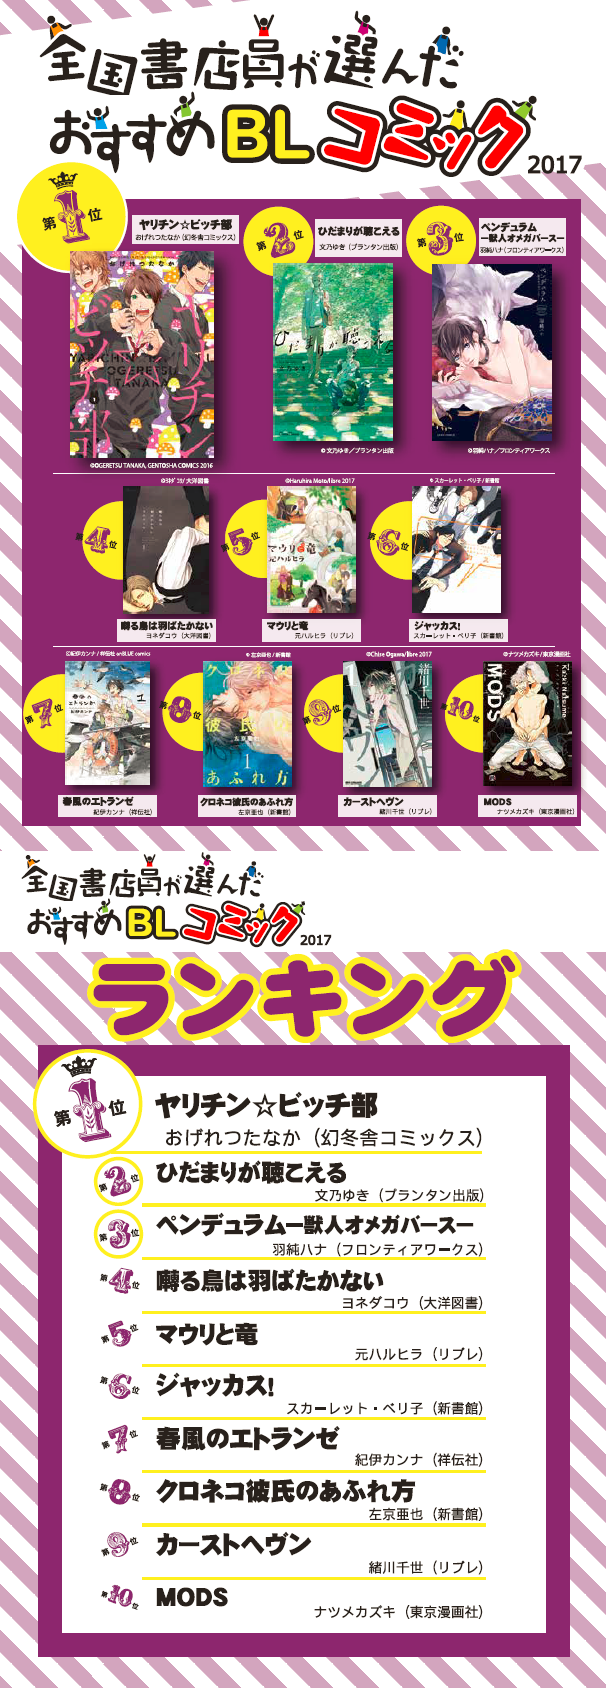 全国書店員が選んだおすすめblコミック17 Blアワード17 ランキング同時発表 日本出版販売株式会社